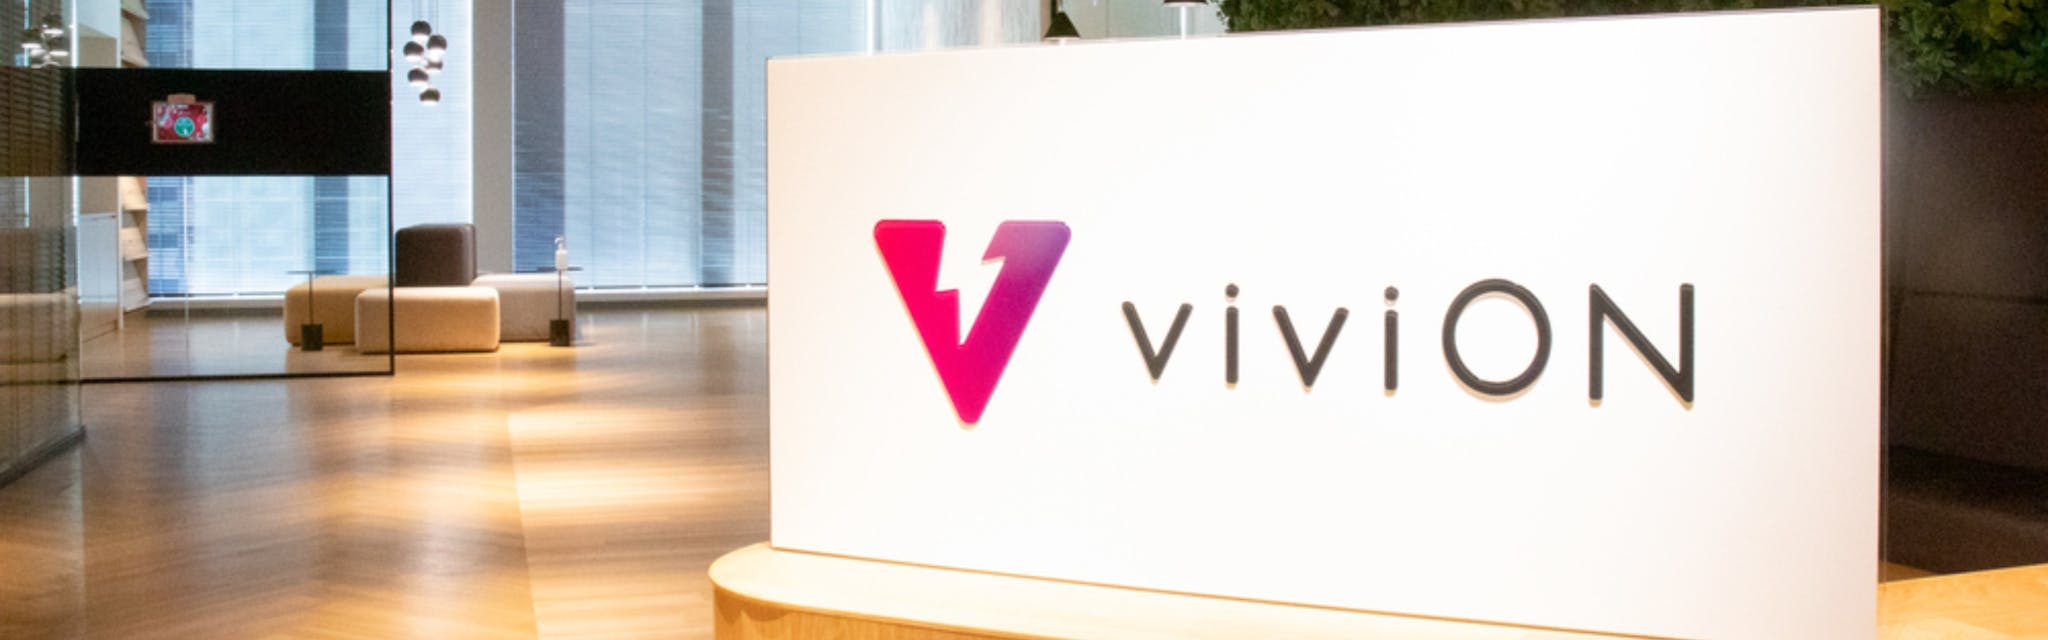 株式会社viviON - カバー画像